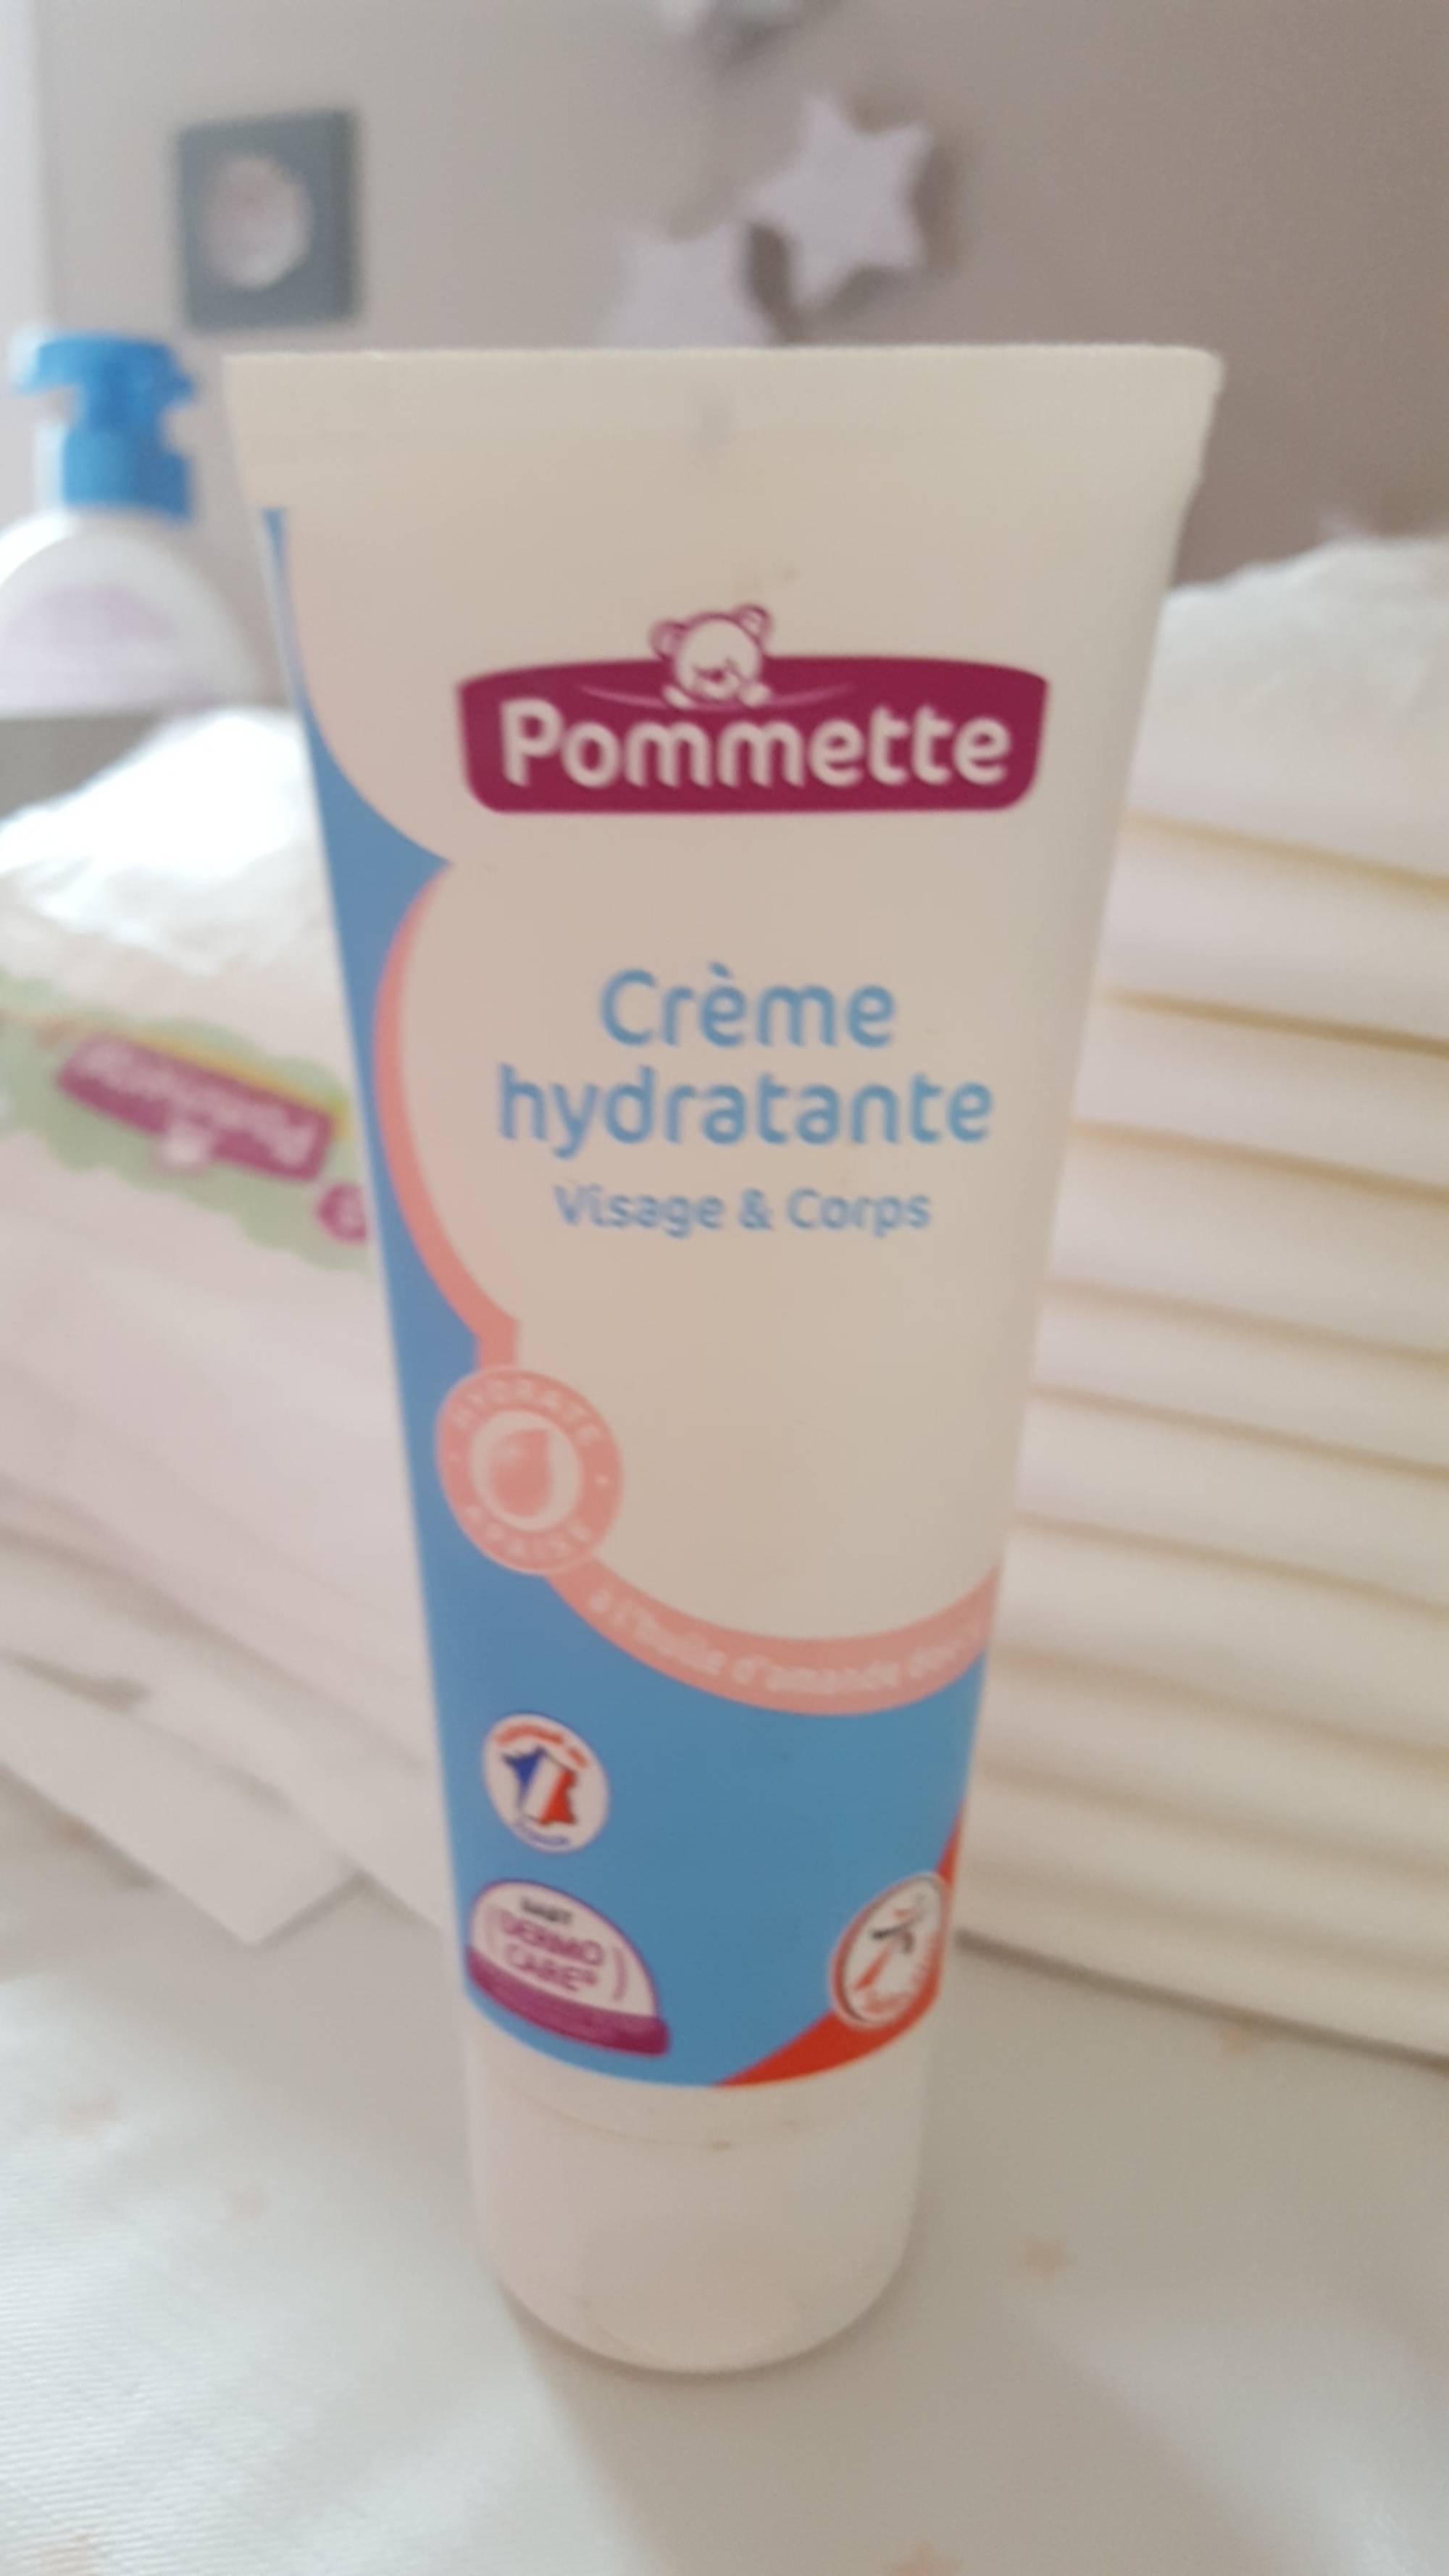 POMMETTE - Crème hydratante visage & corps